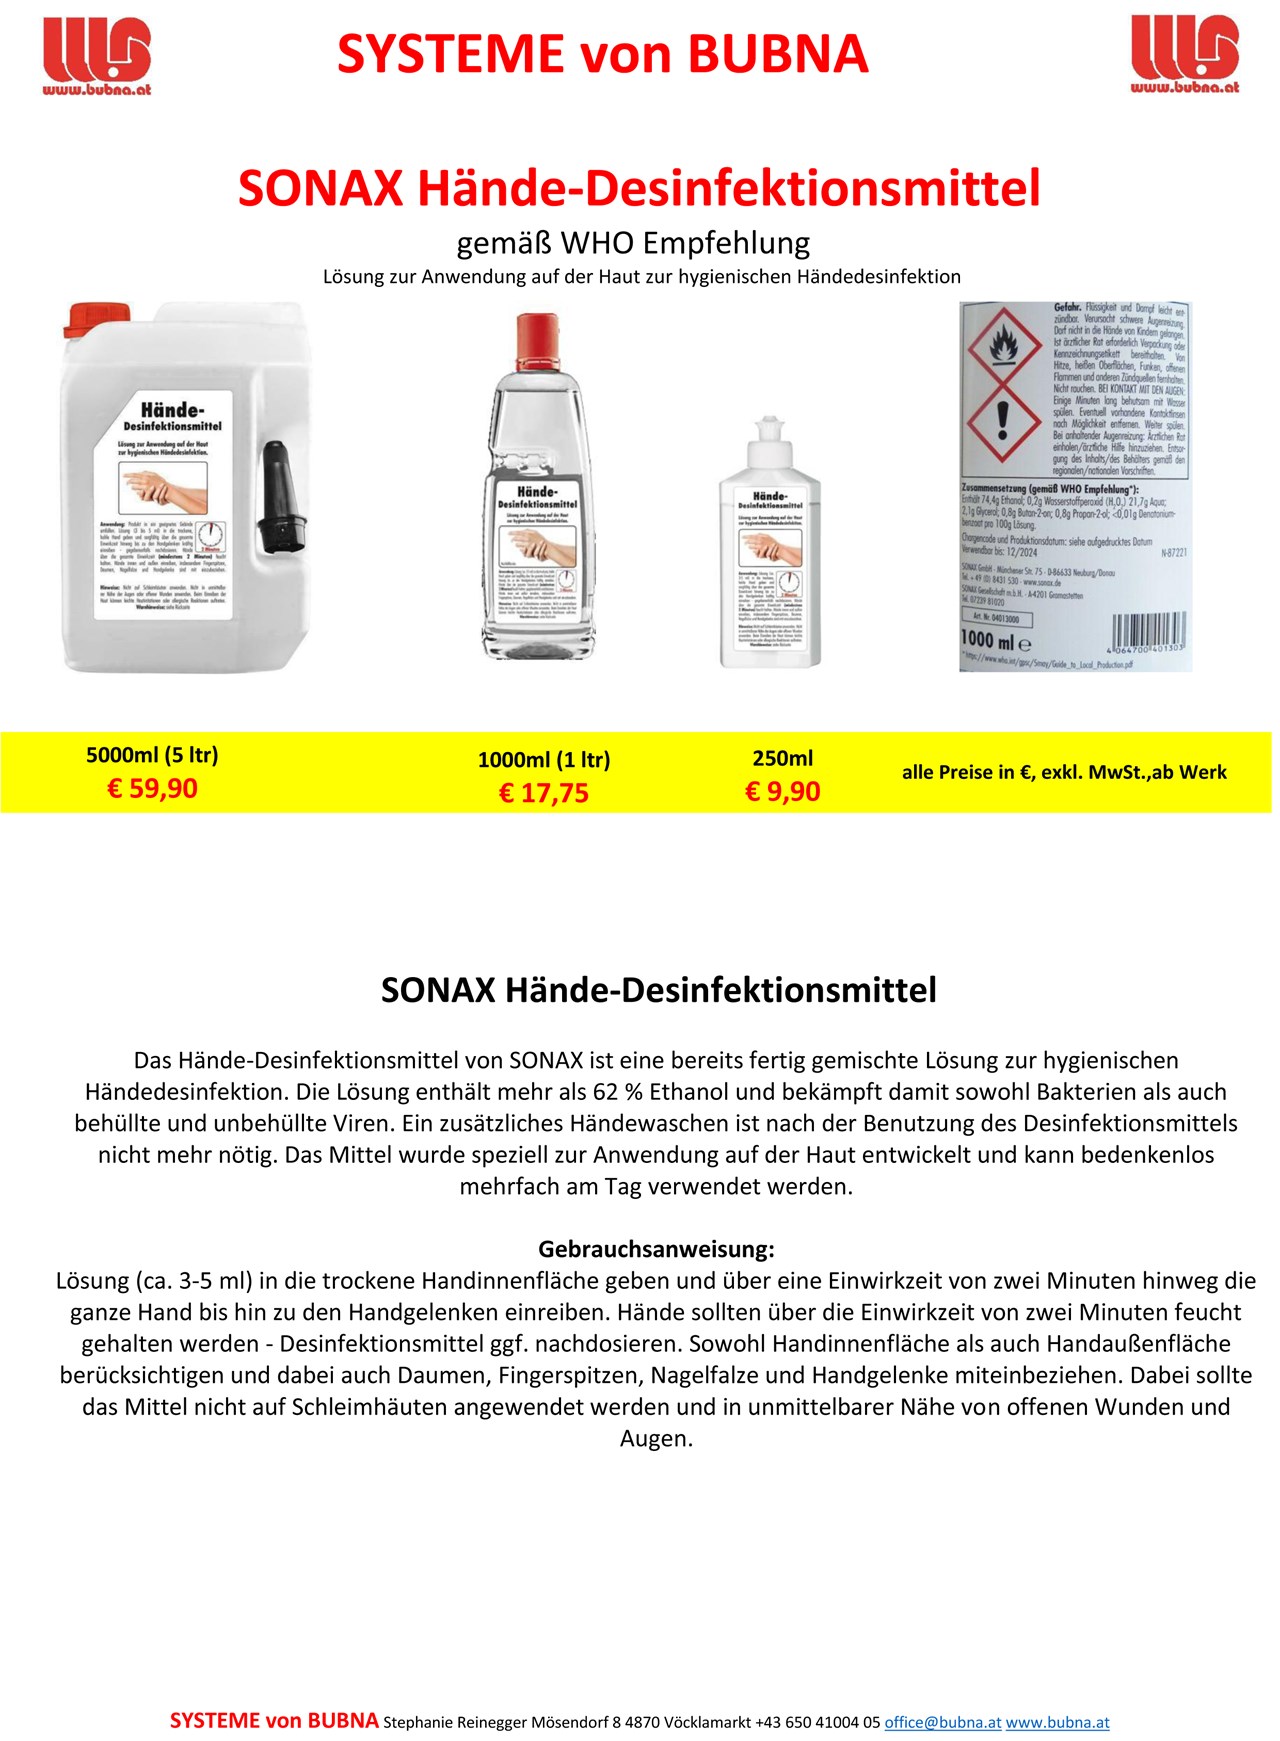 BUBNA Systeme  Produkt-Beispiele Desinfektionsmittel